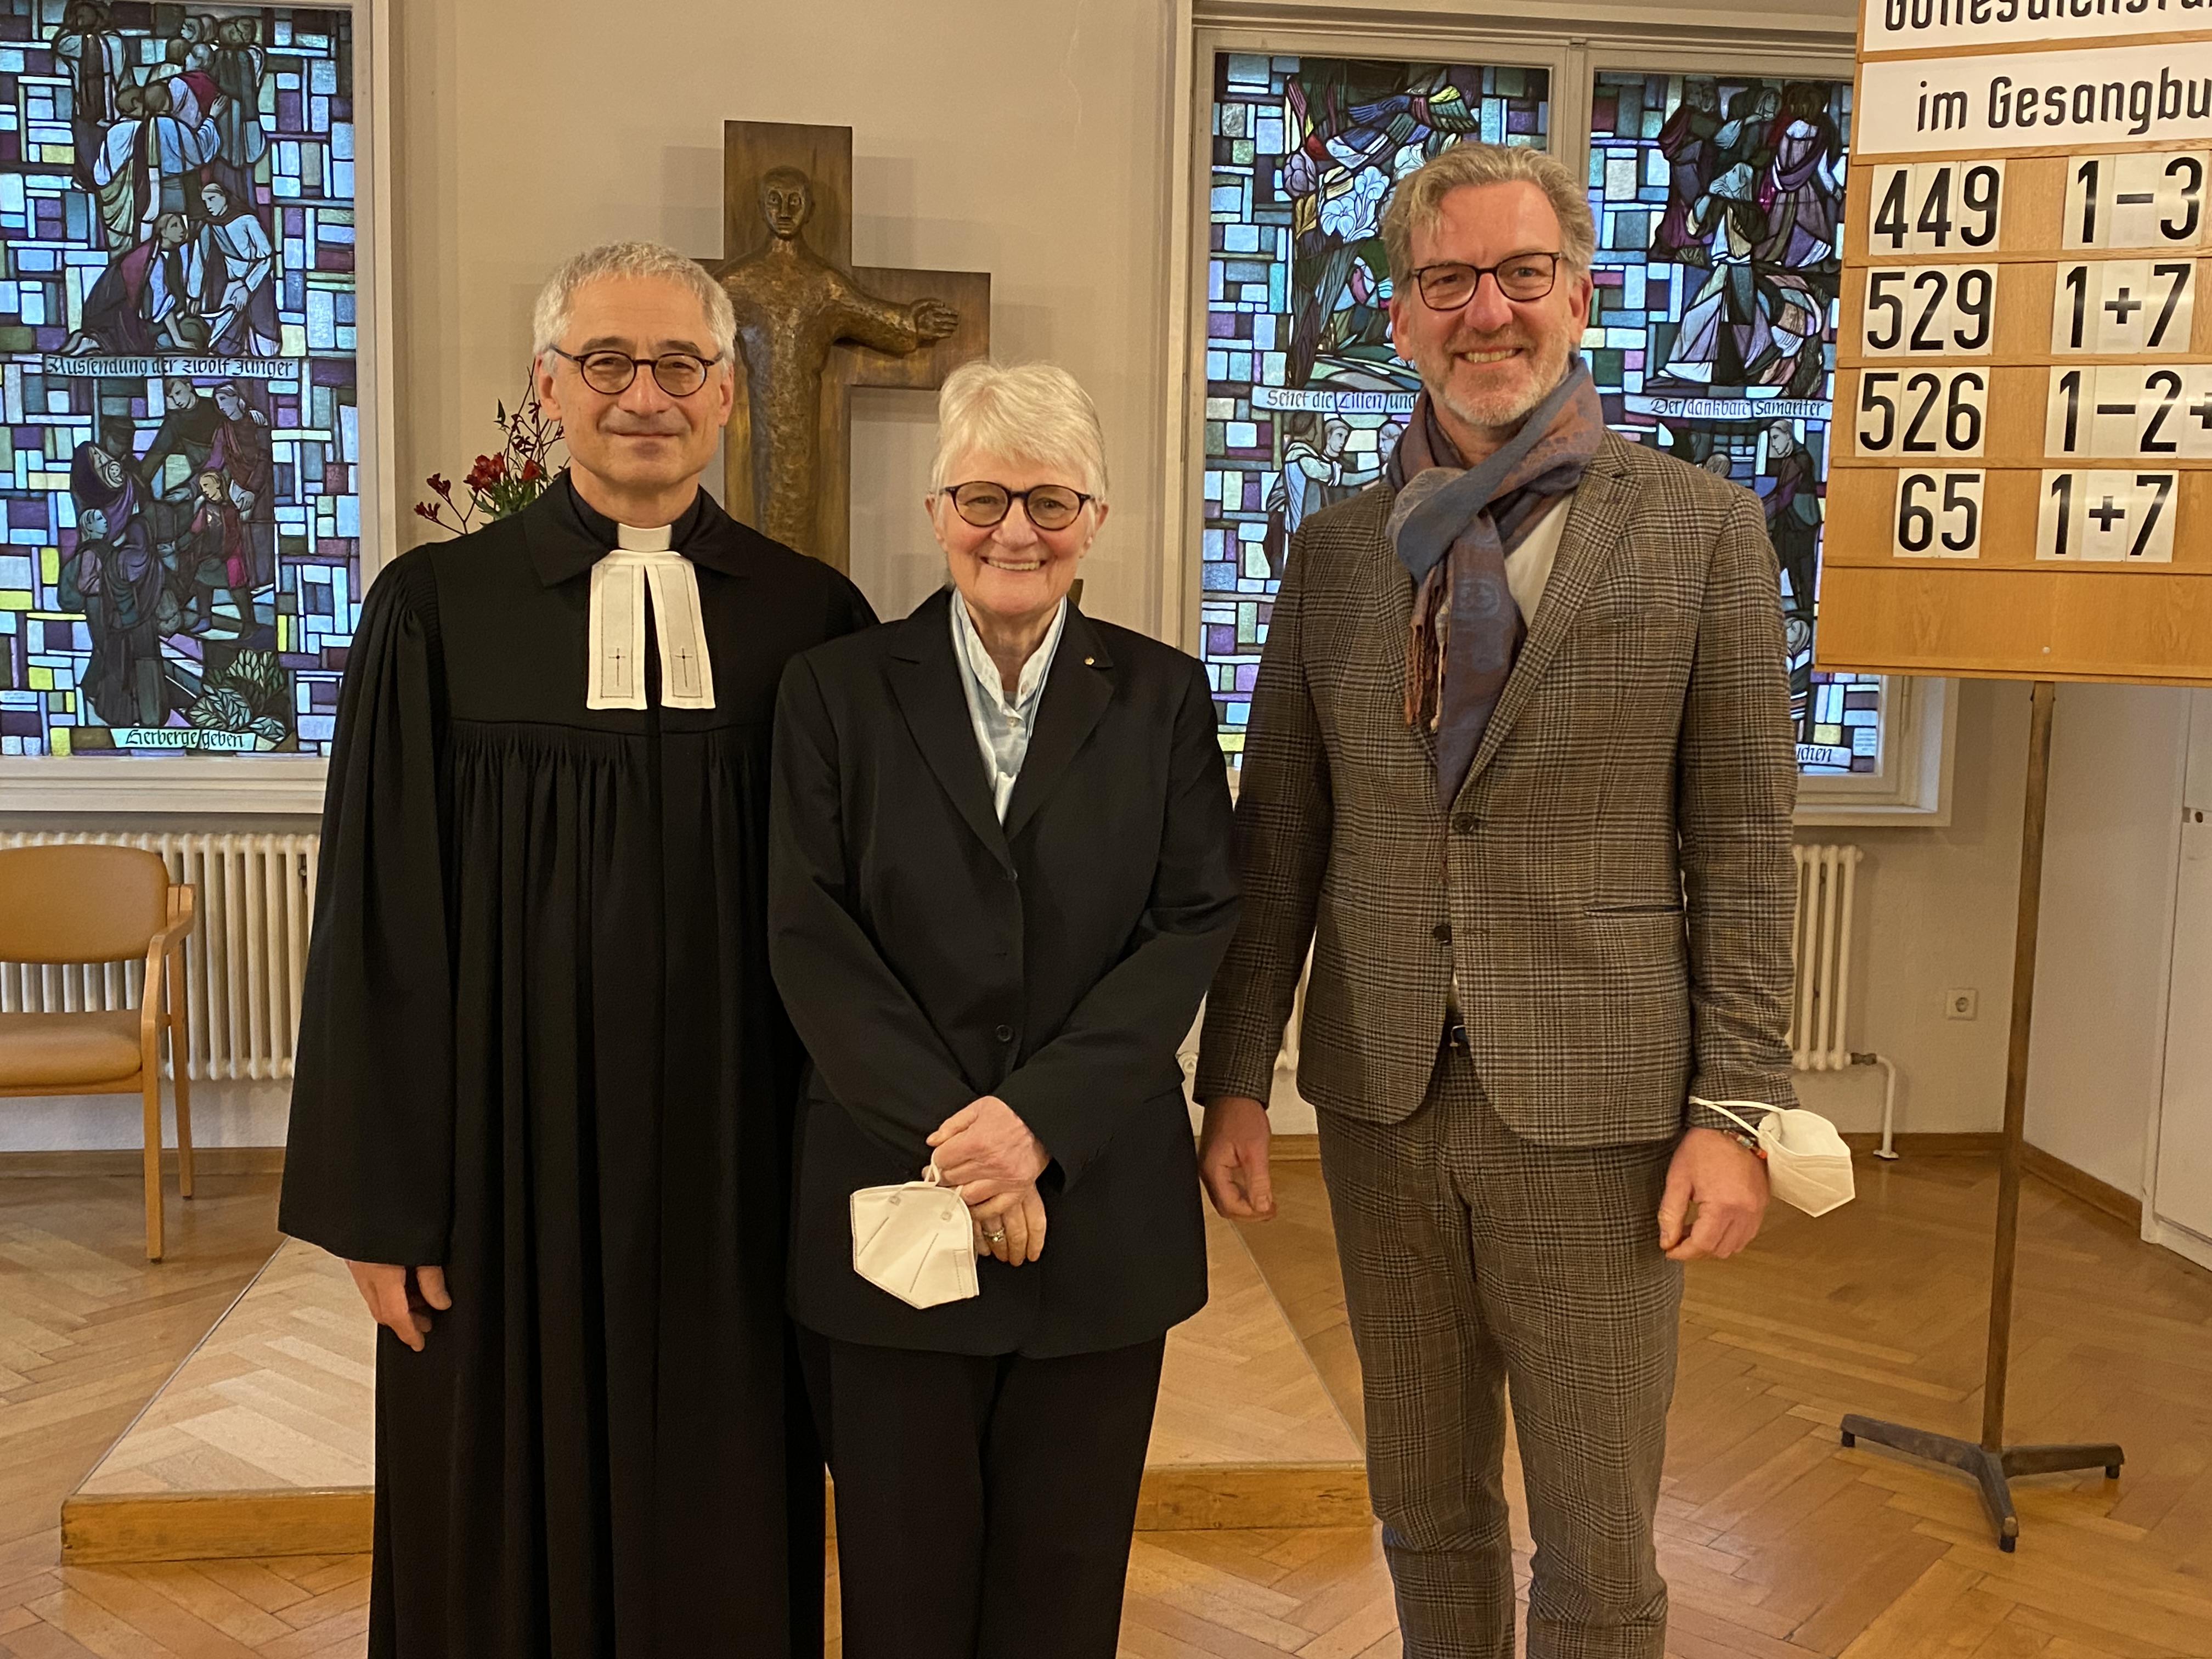 Wolfgang Weiß, Dagmar Schiele und Dr. med. Matthias Albrecht stehen in der Kapelle des Evangelischen Krankenhauses Hubertus.